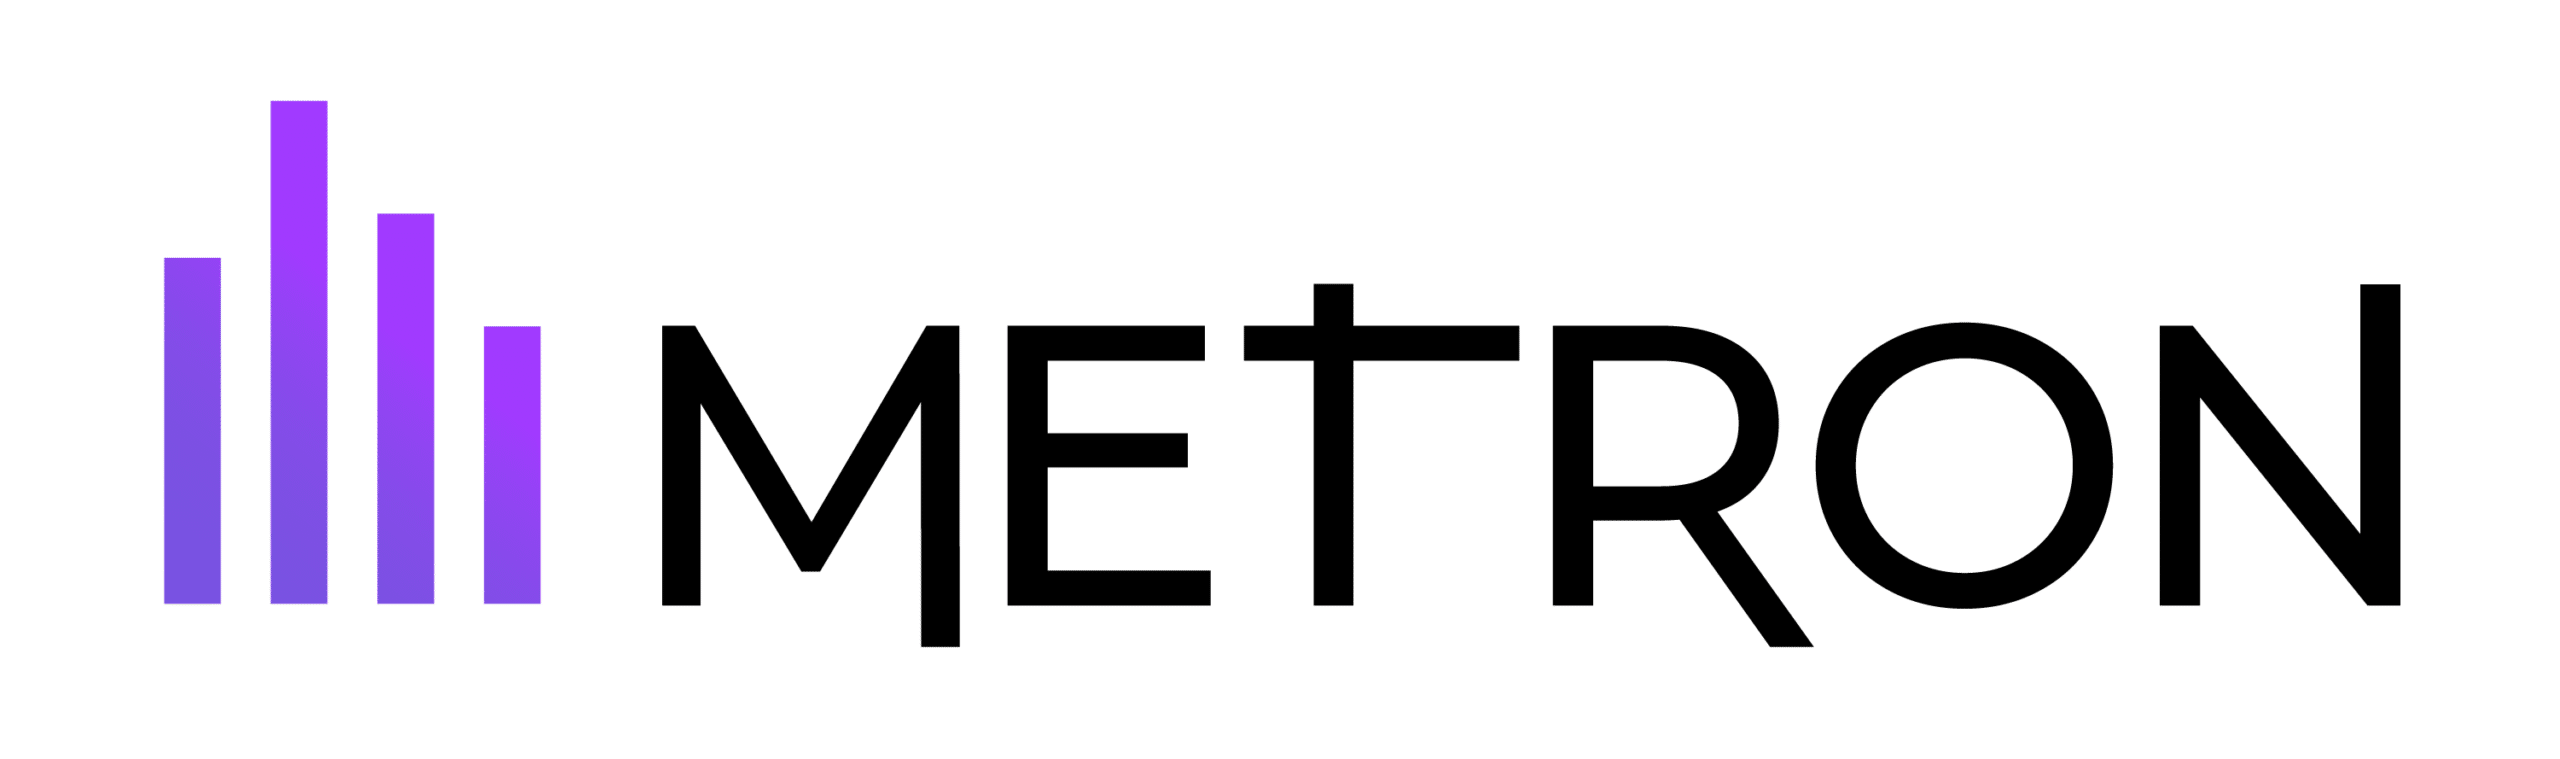 METRON est une cleantech française dont la raison d’être est de digitaliser l’énergie pour décarboner les territoires.